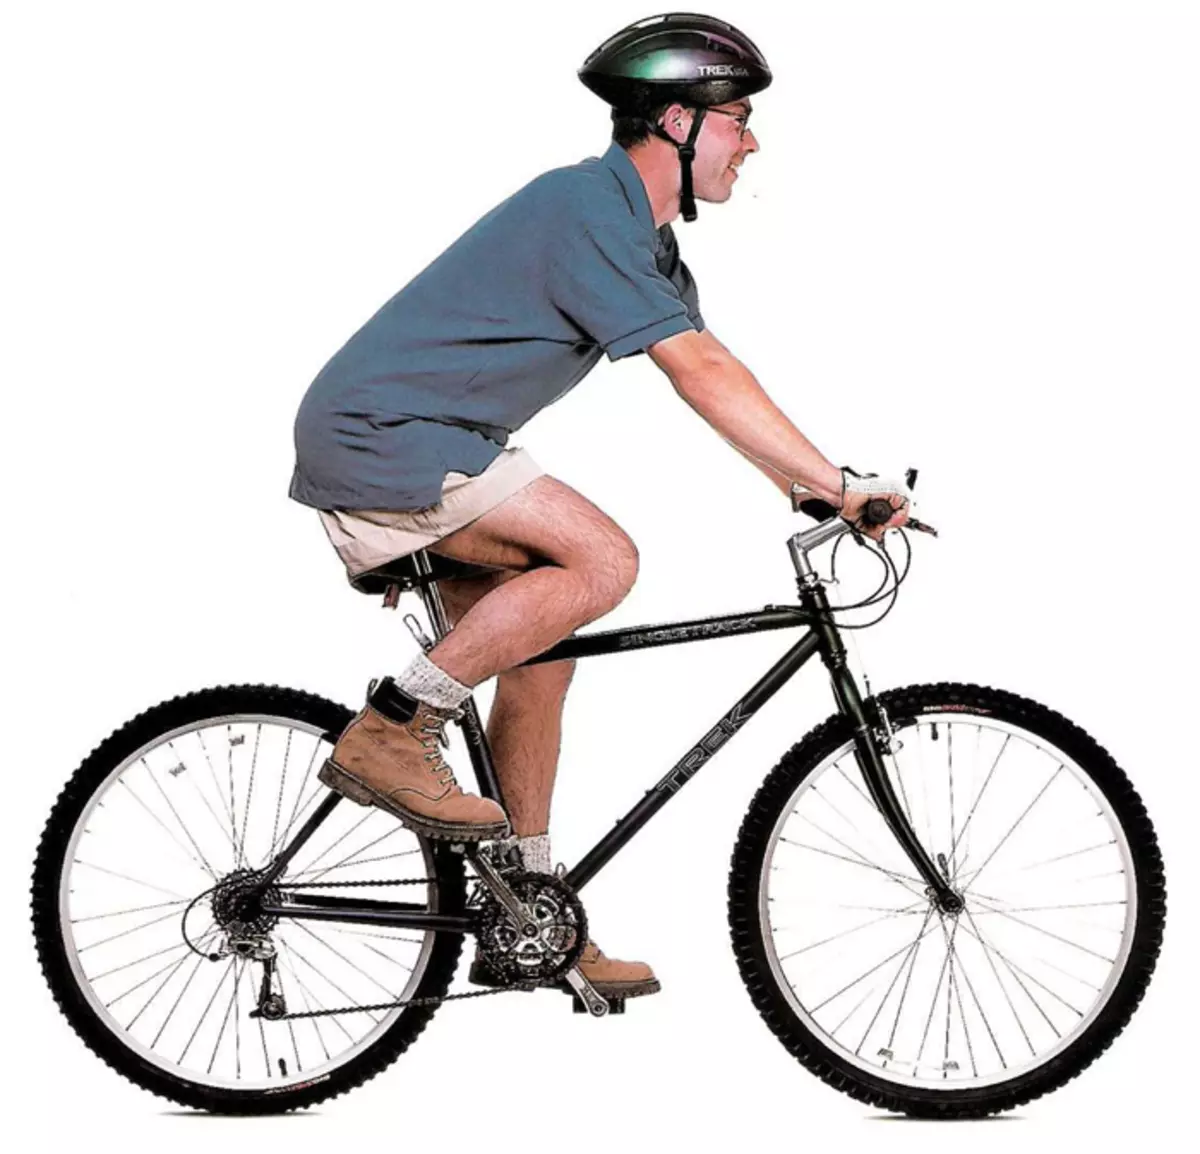 Bicikla seĝo: Superrigardo de komfortaj viraj kaj inaj biciklaj seloj, trajtoj de komfortaj molaj flankenoj kaj arbustoj kun skusorbilo 20466_49